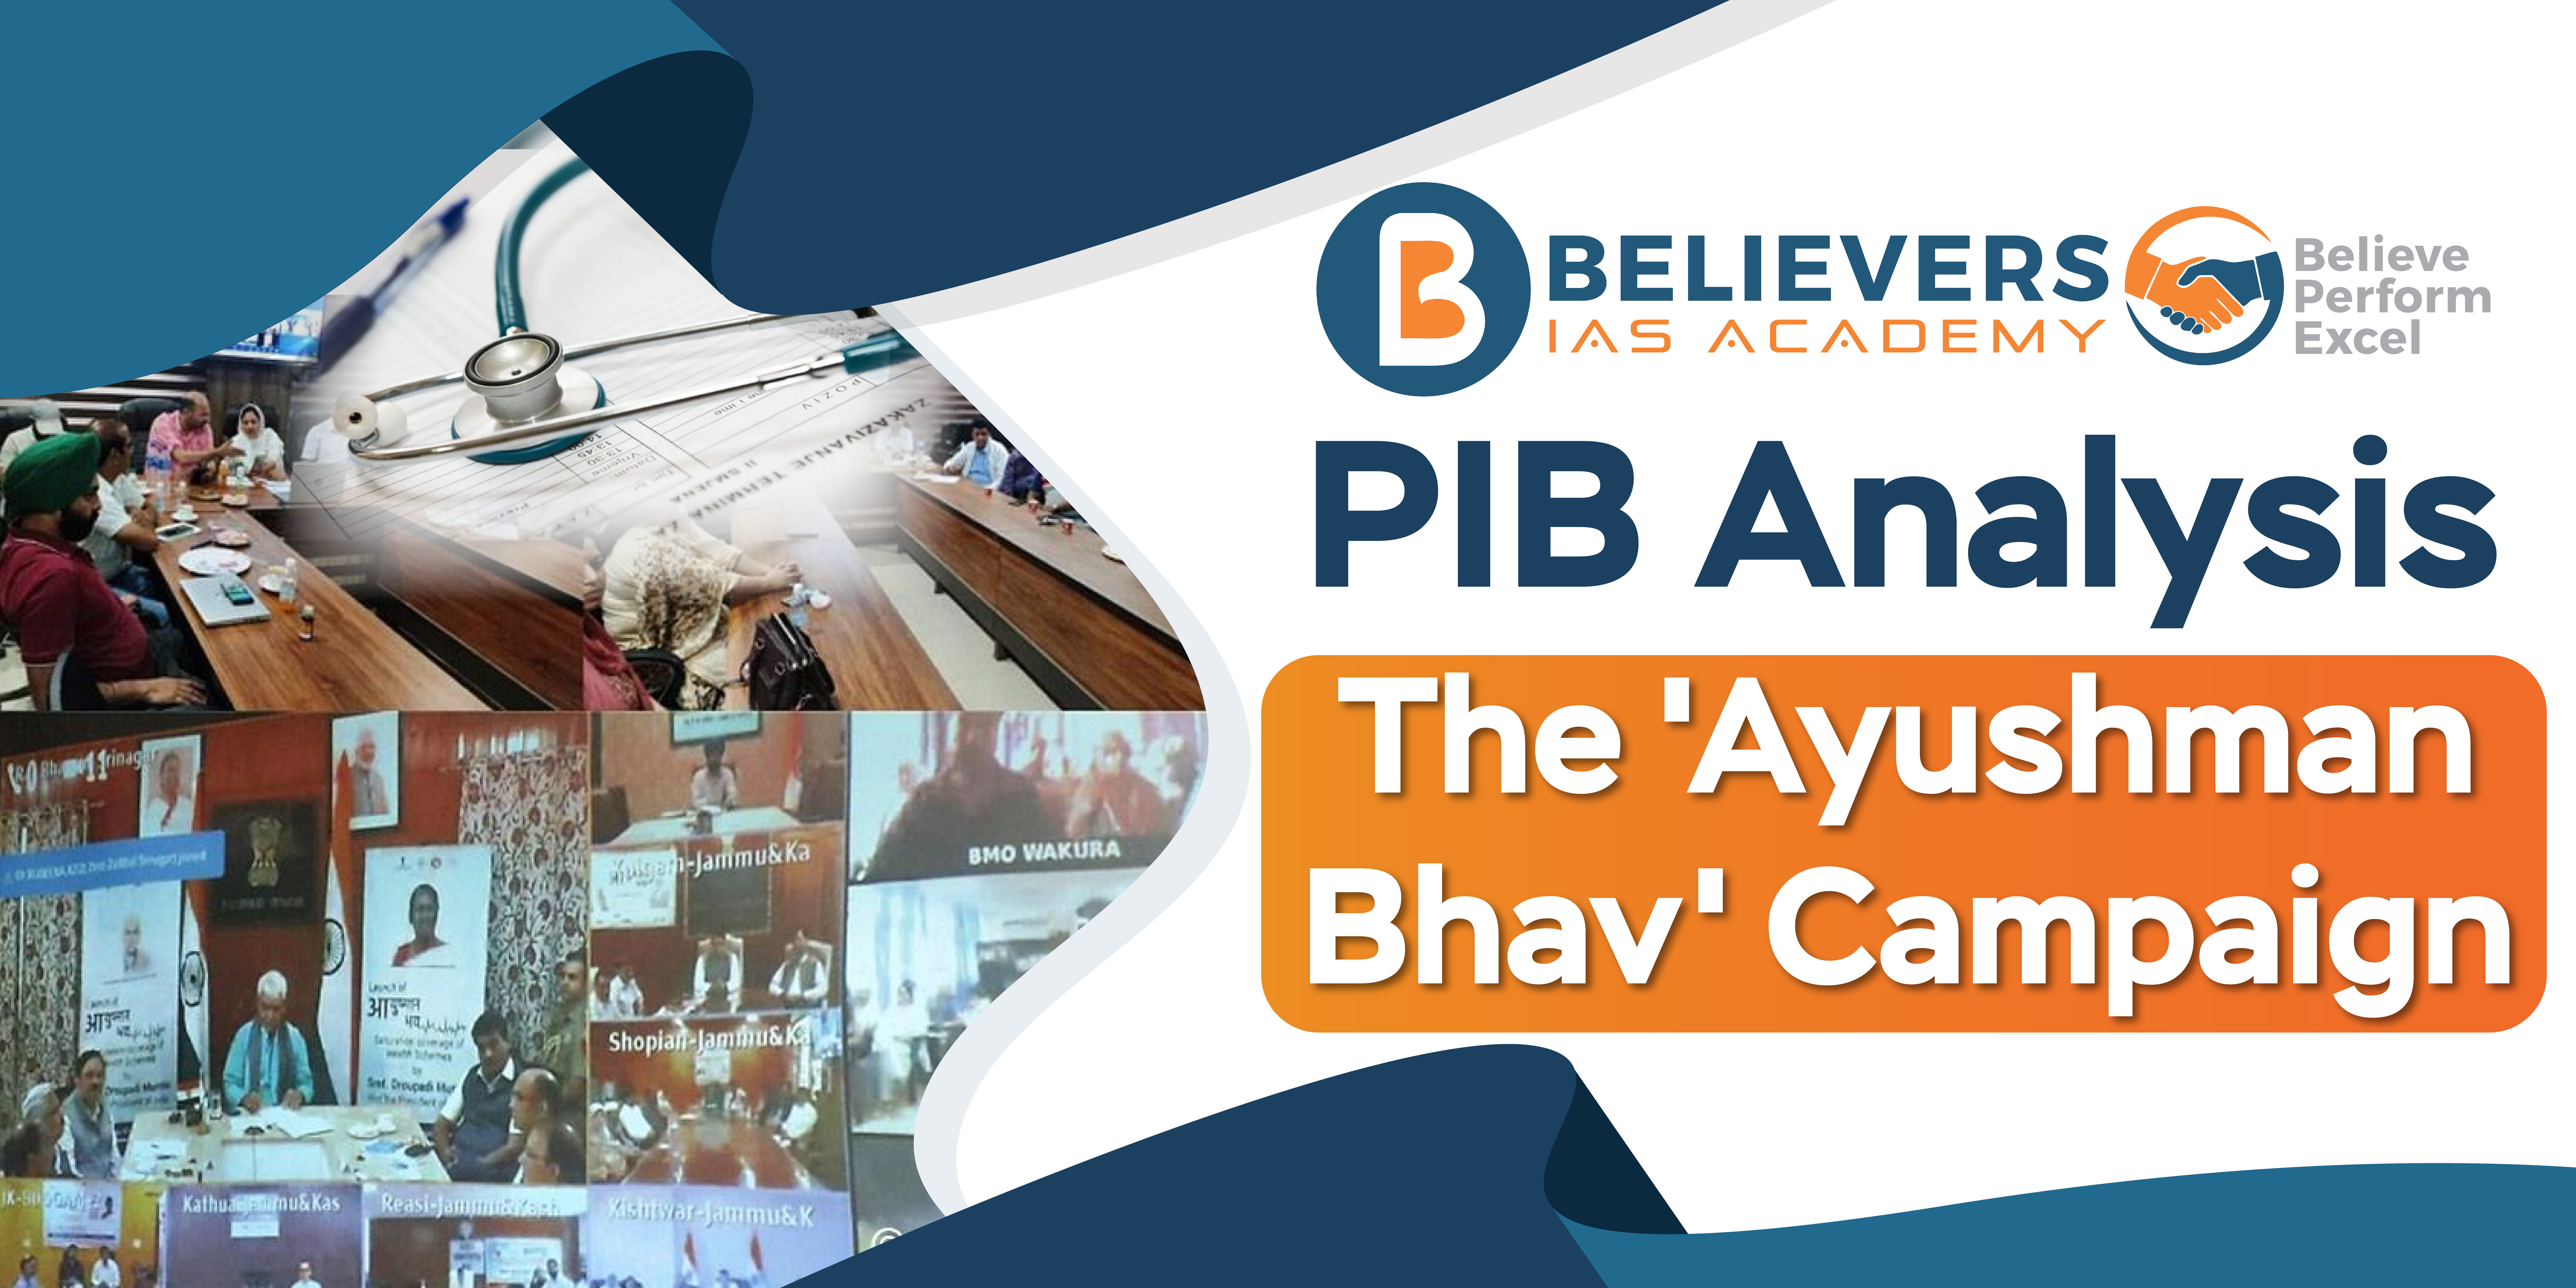 The 'Ayushman Bhav' Campaign